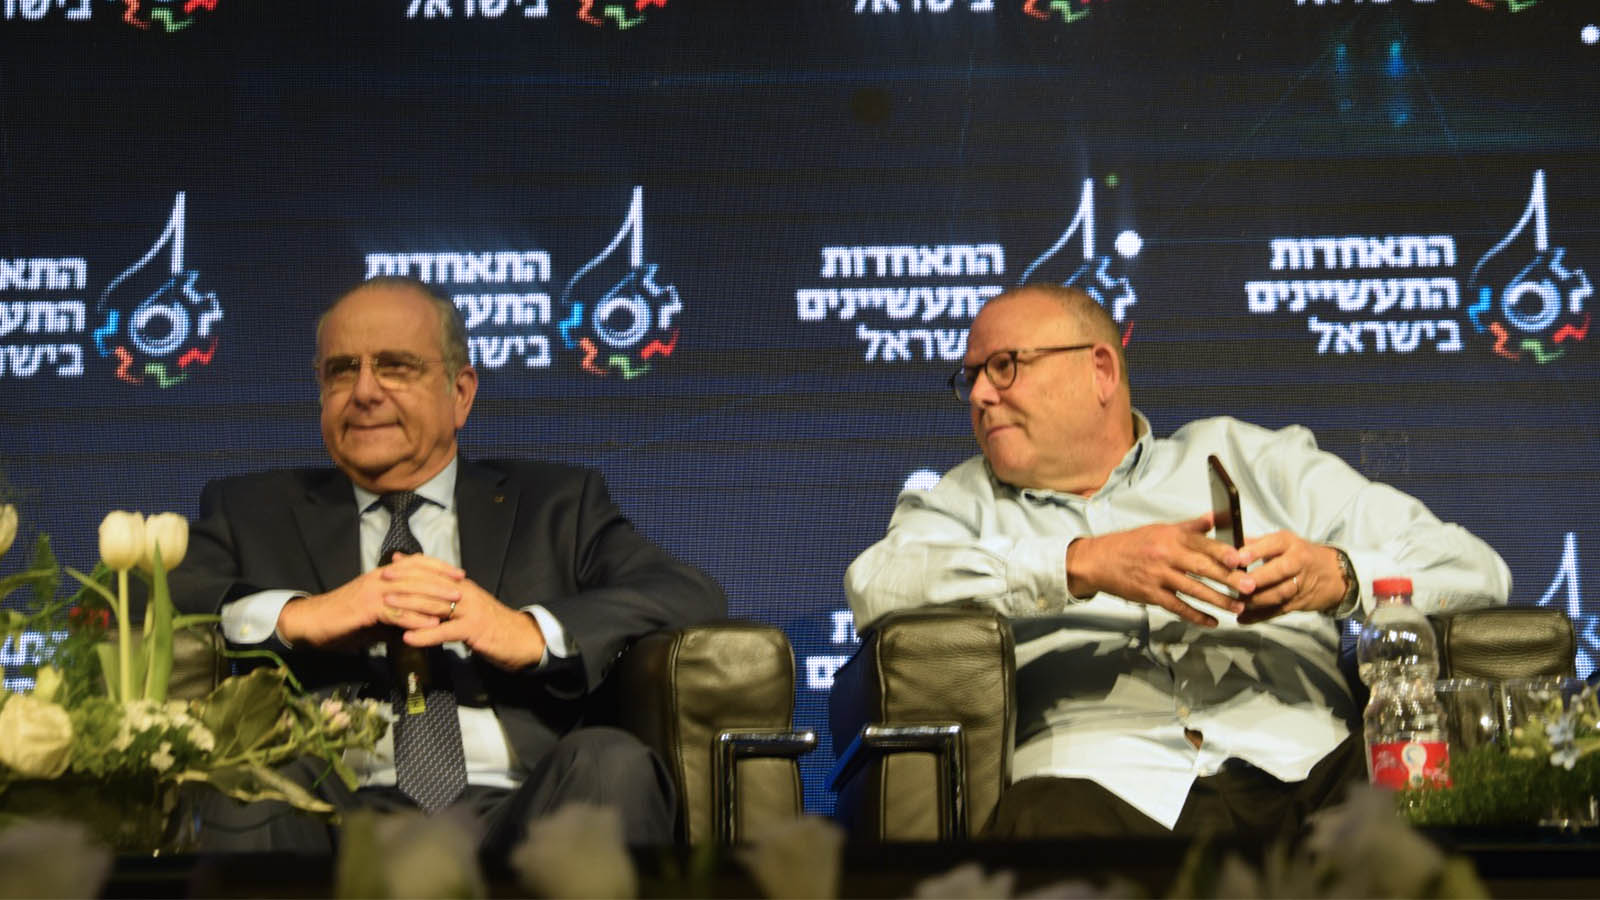 رئيس مجلس الهستدروت أرنون بار دافيد وسارغا بروش، رئيس اتحاد المصنعين المتقاعد، في مؤتمر الصناعة الإسرائيلي، 2 ديسمبر 2019. (تصوير: عومير كوهين)